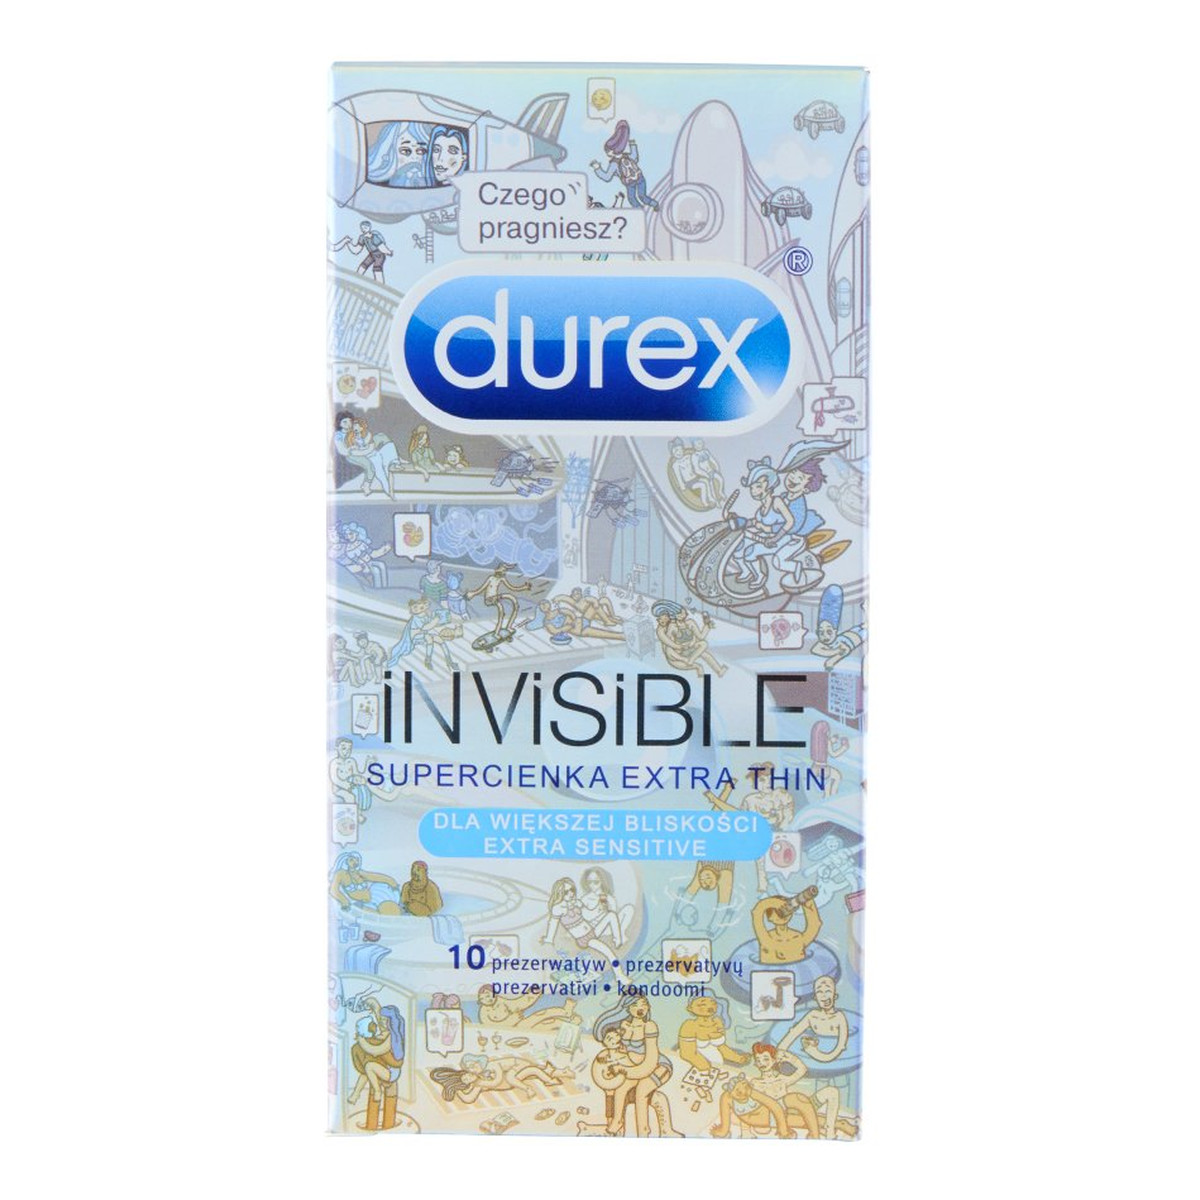 Durex Prezerwatywy invisible supercienka extra thin dla większej bliskości 10 szt extra sensitive emoji